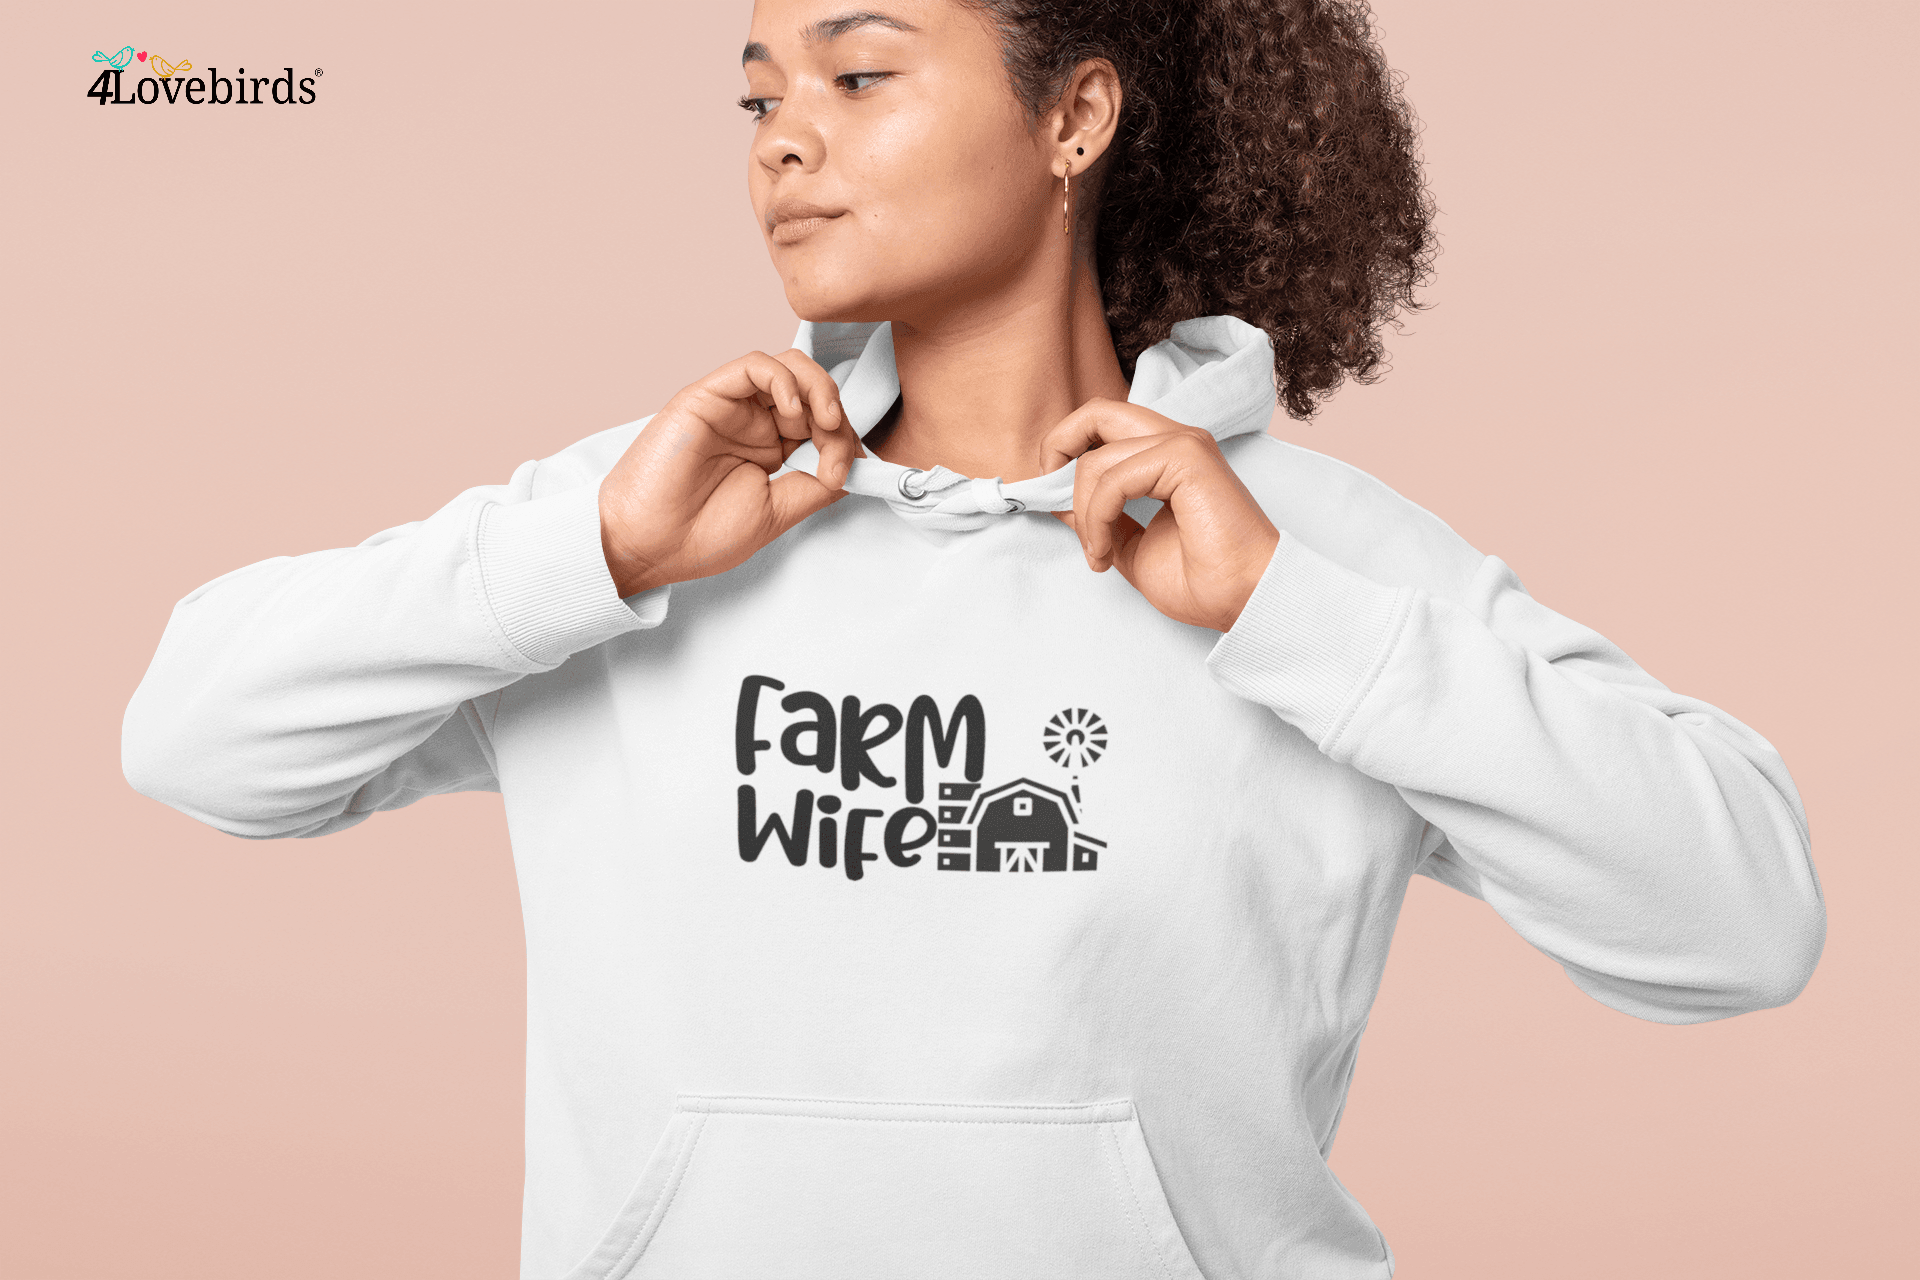 Farm Wife Hoodie, Farm Life T-Shirt, Farming Sweatshirt, Farm Couple Gifts - 4Lovebirds